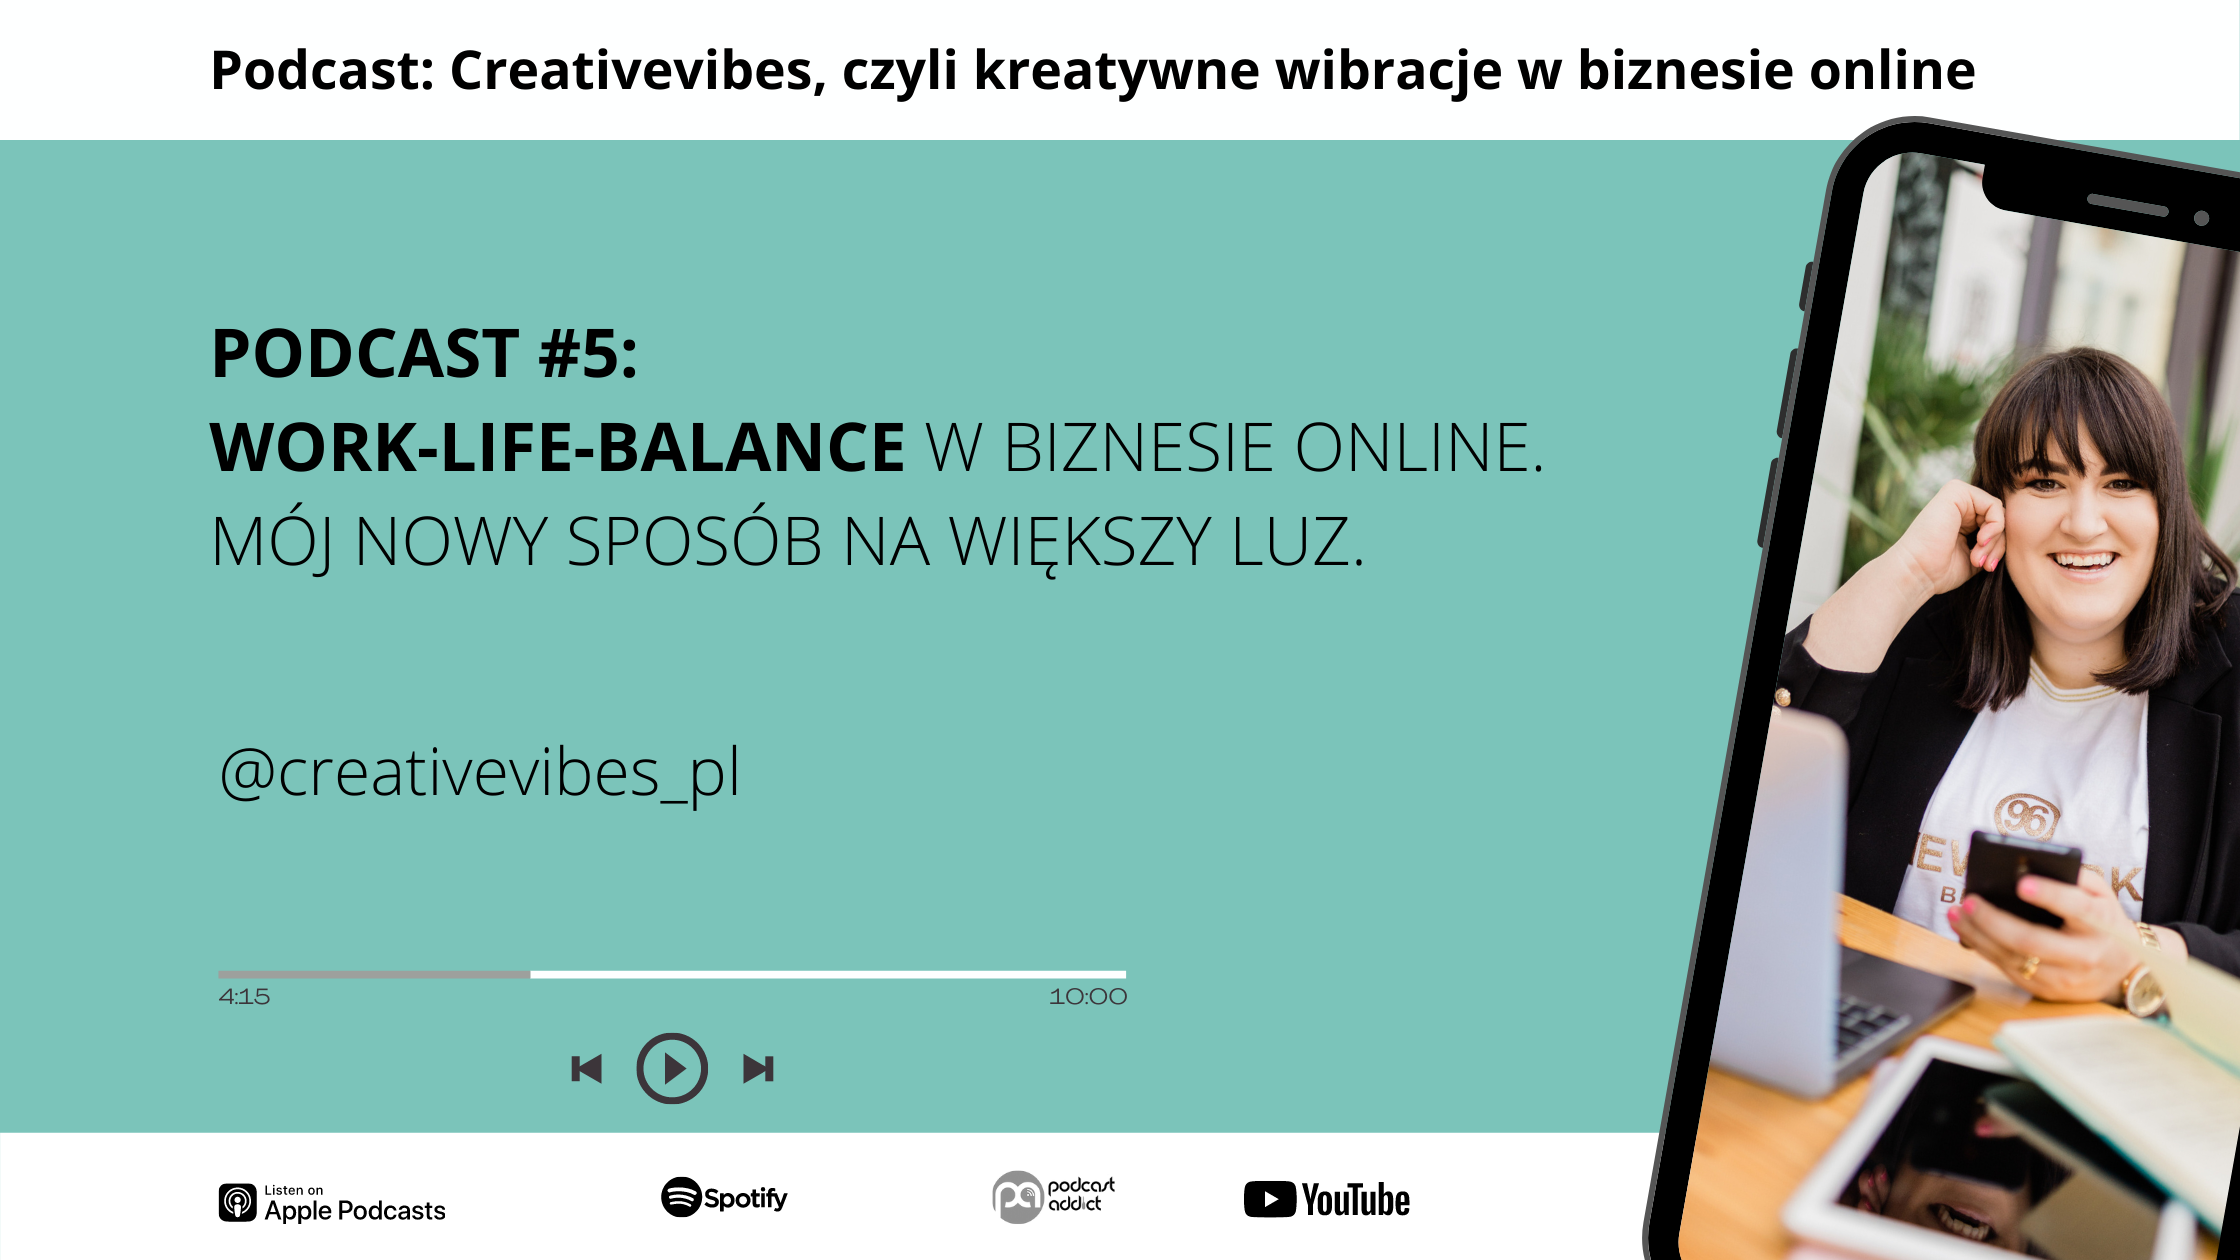 Podcast Creativevibes - Work-life balance w biznesie online. Mój nowy sposób na większy luz.